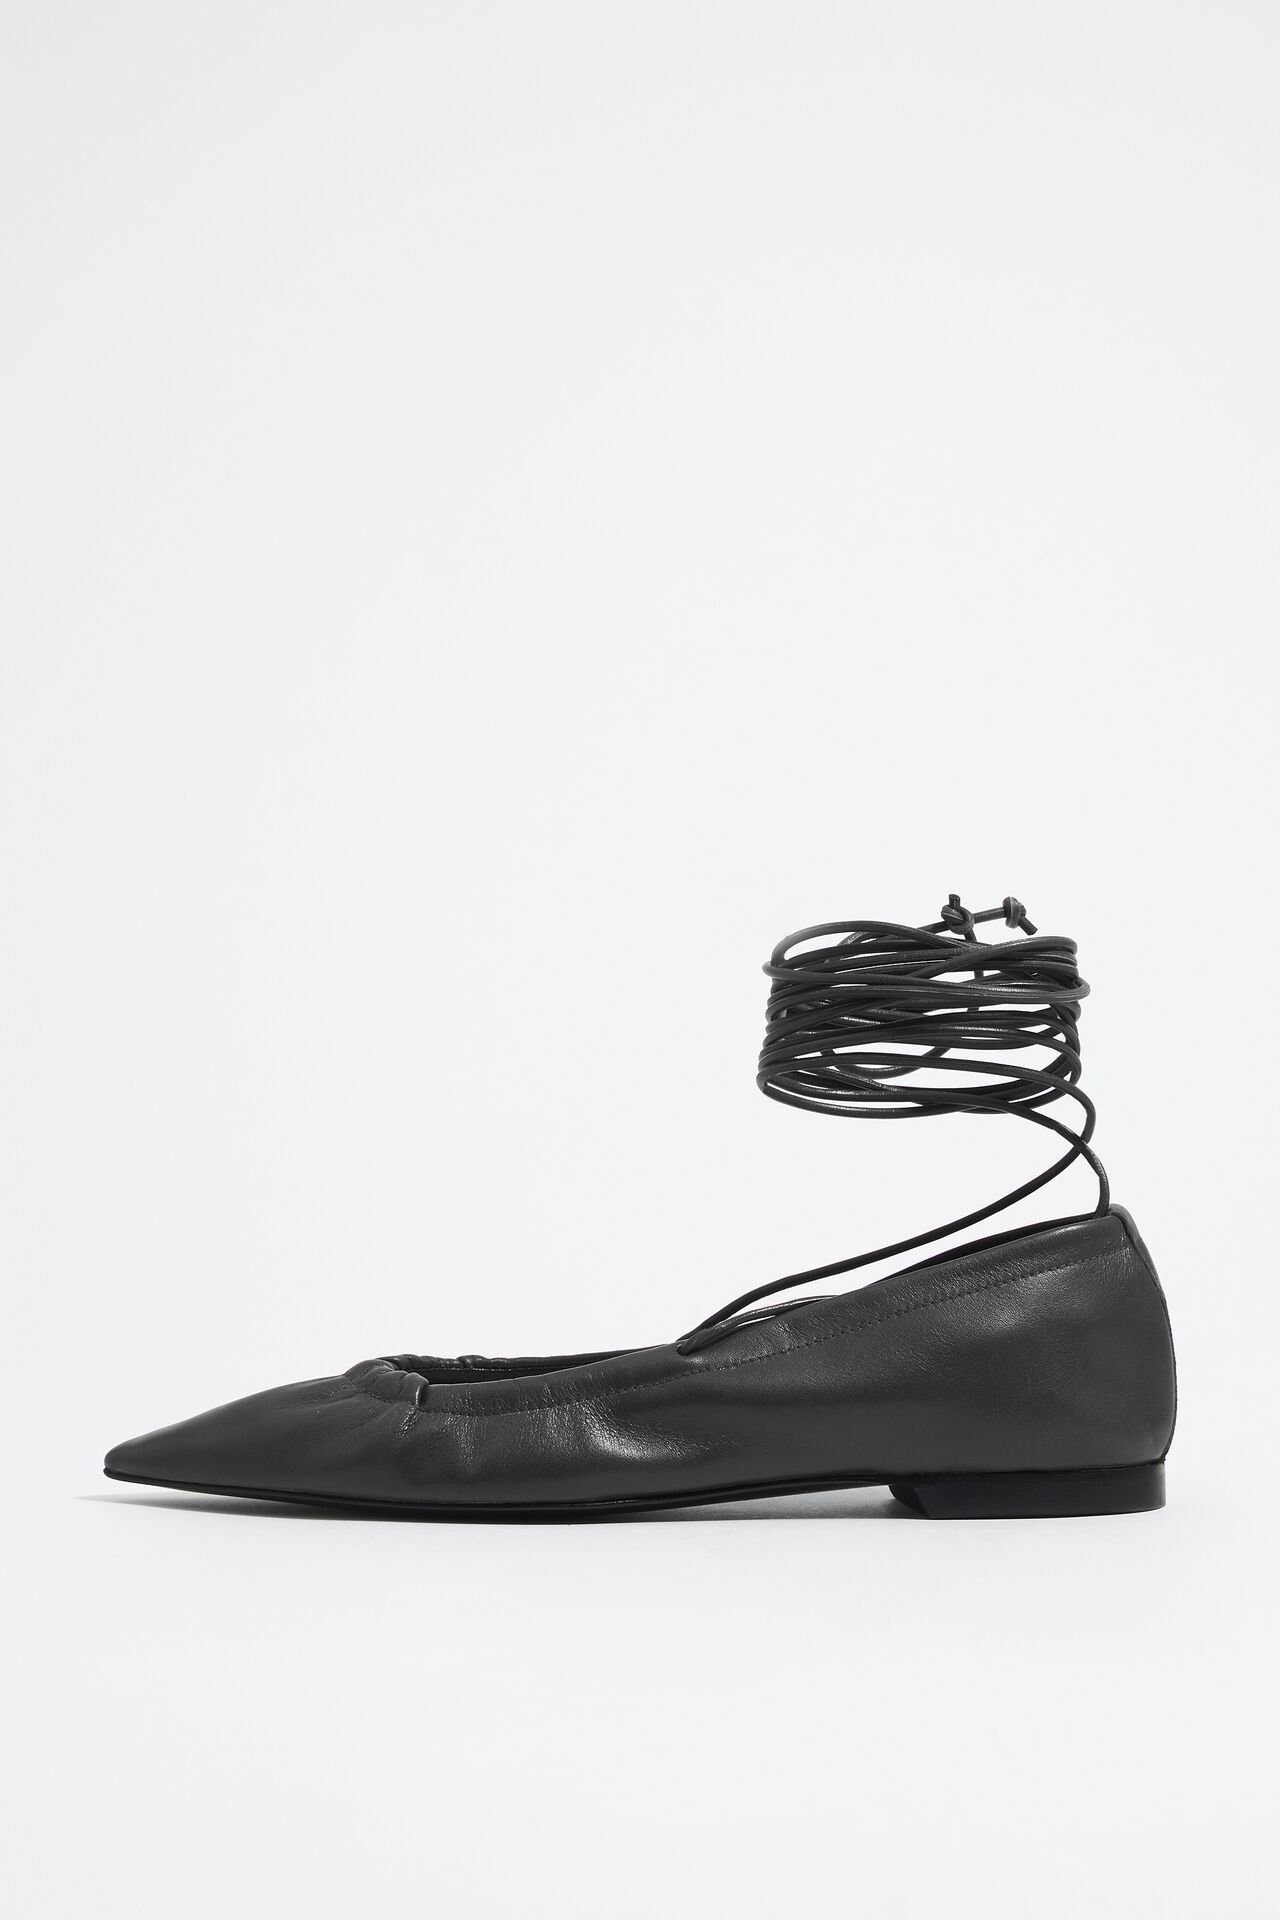 Bimba y Lola + Black flat lace-up leather shoe